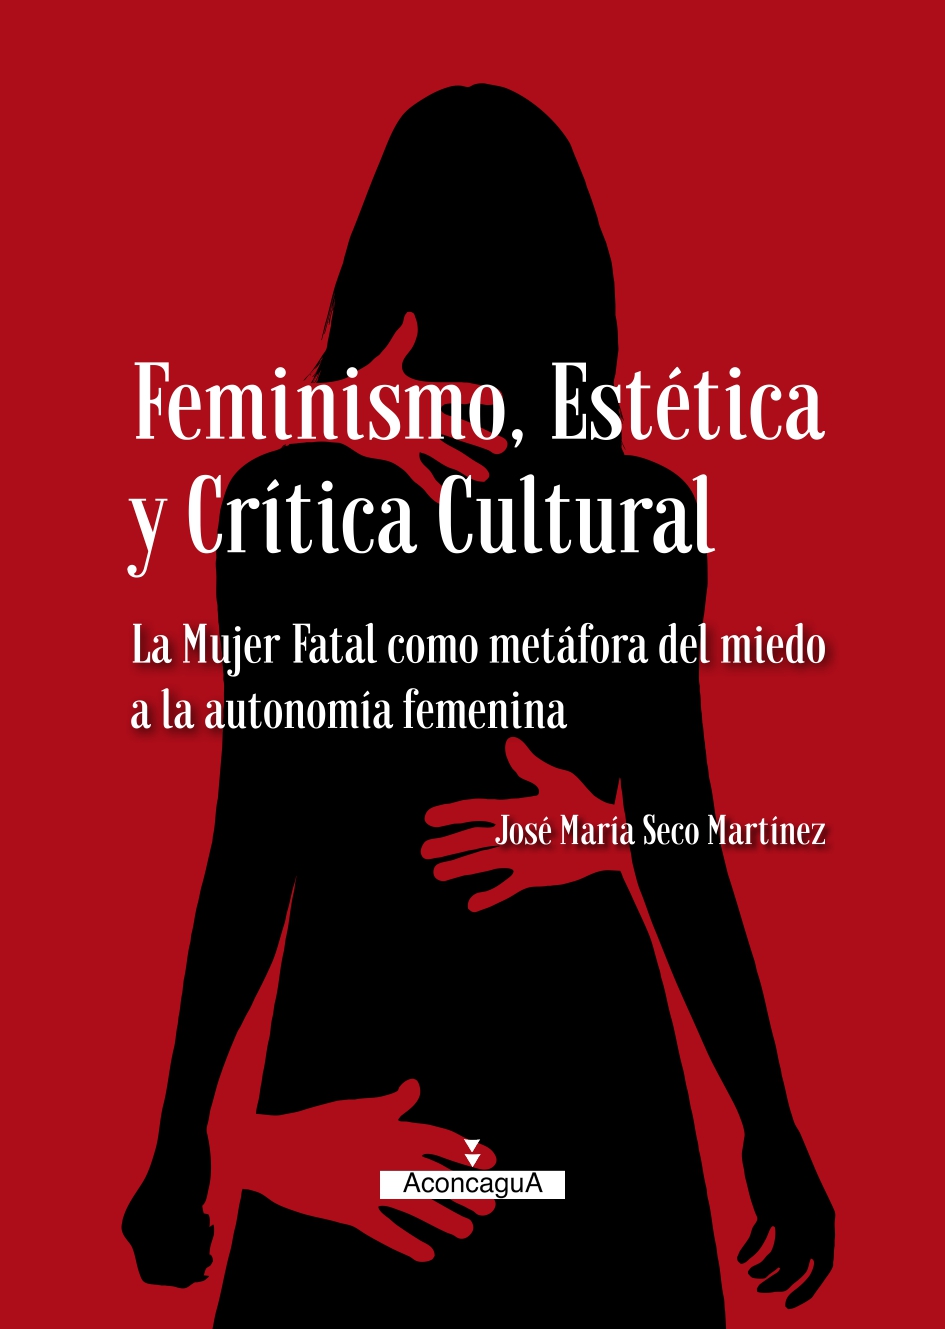 Imagen de portada del libro Feminismo, Estética y Crítica Cultural